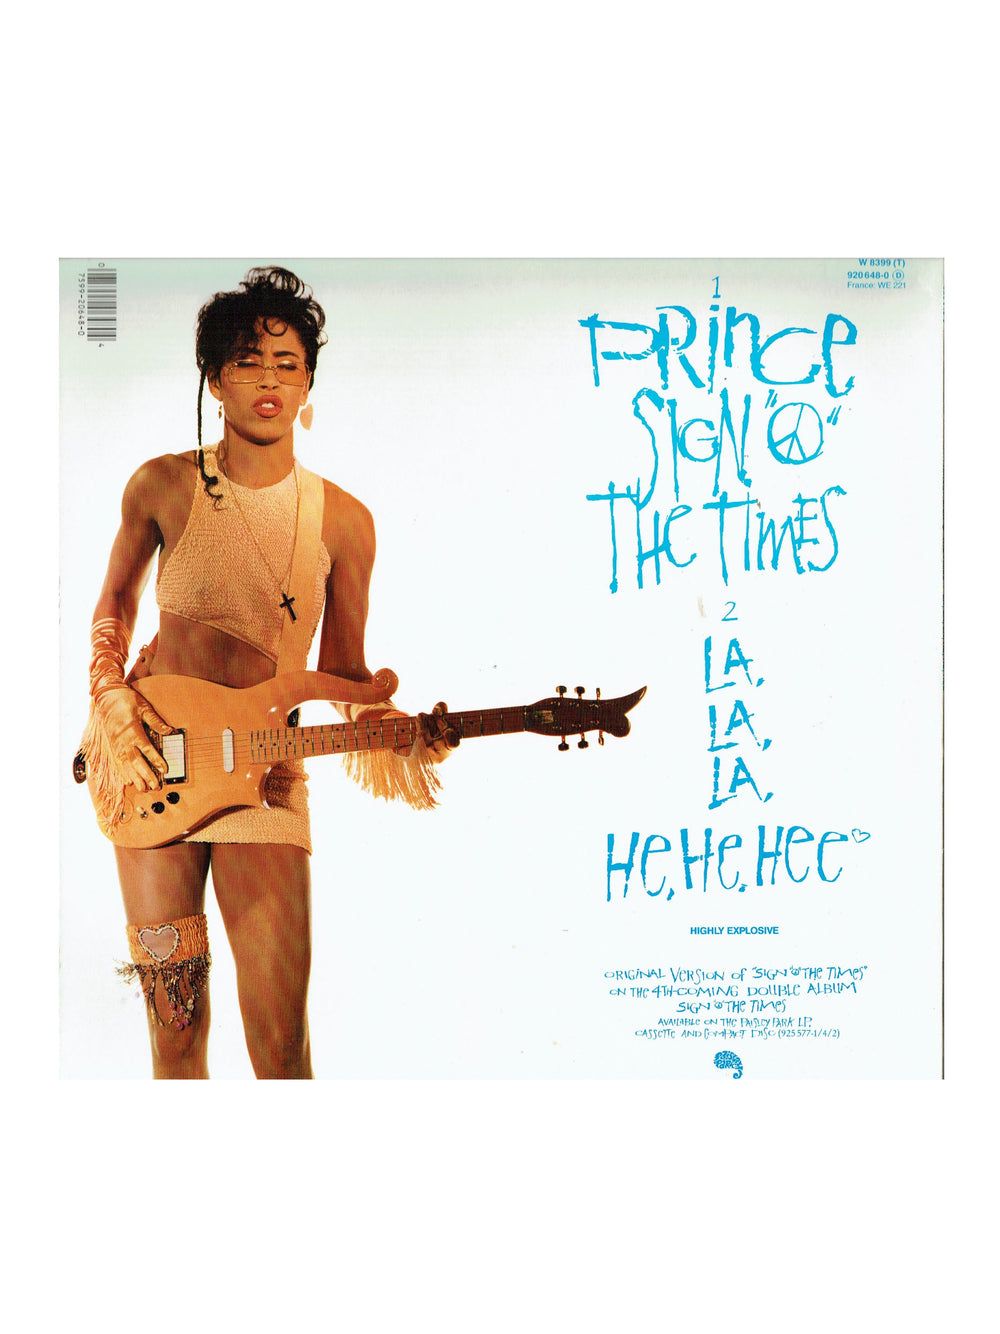 Prince – Sign O The Times Vinyl 12" EU  Preloved: 1987